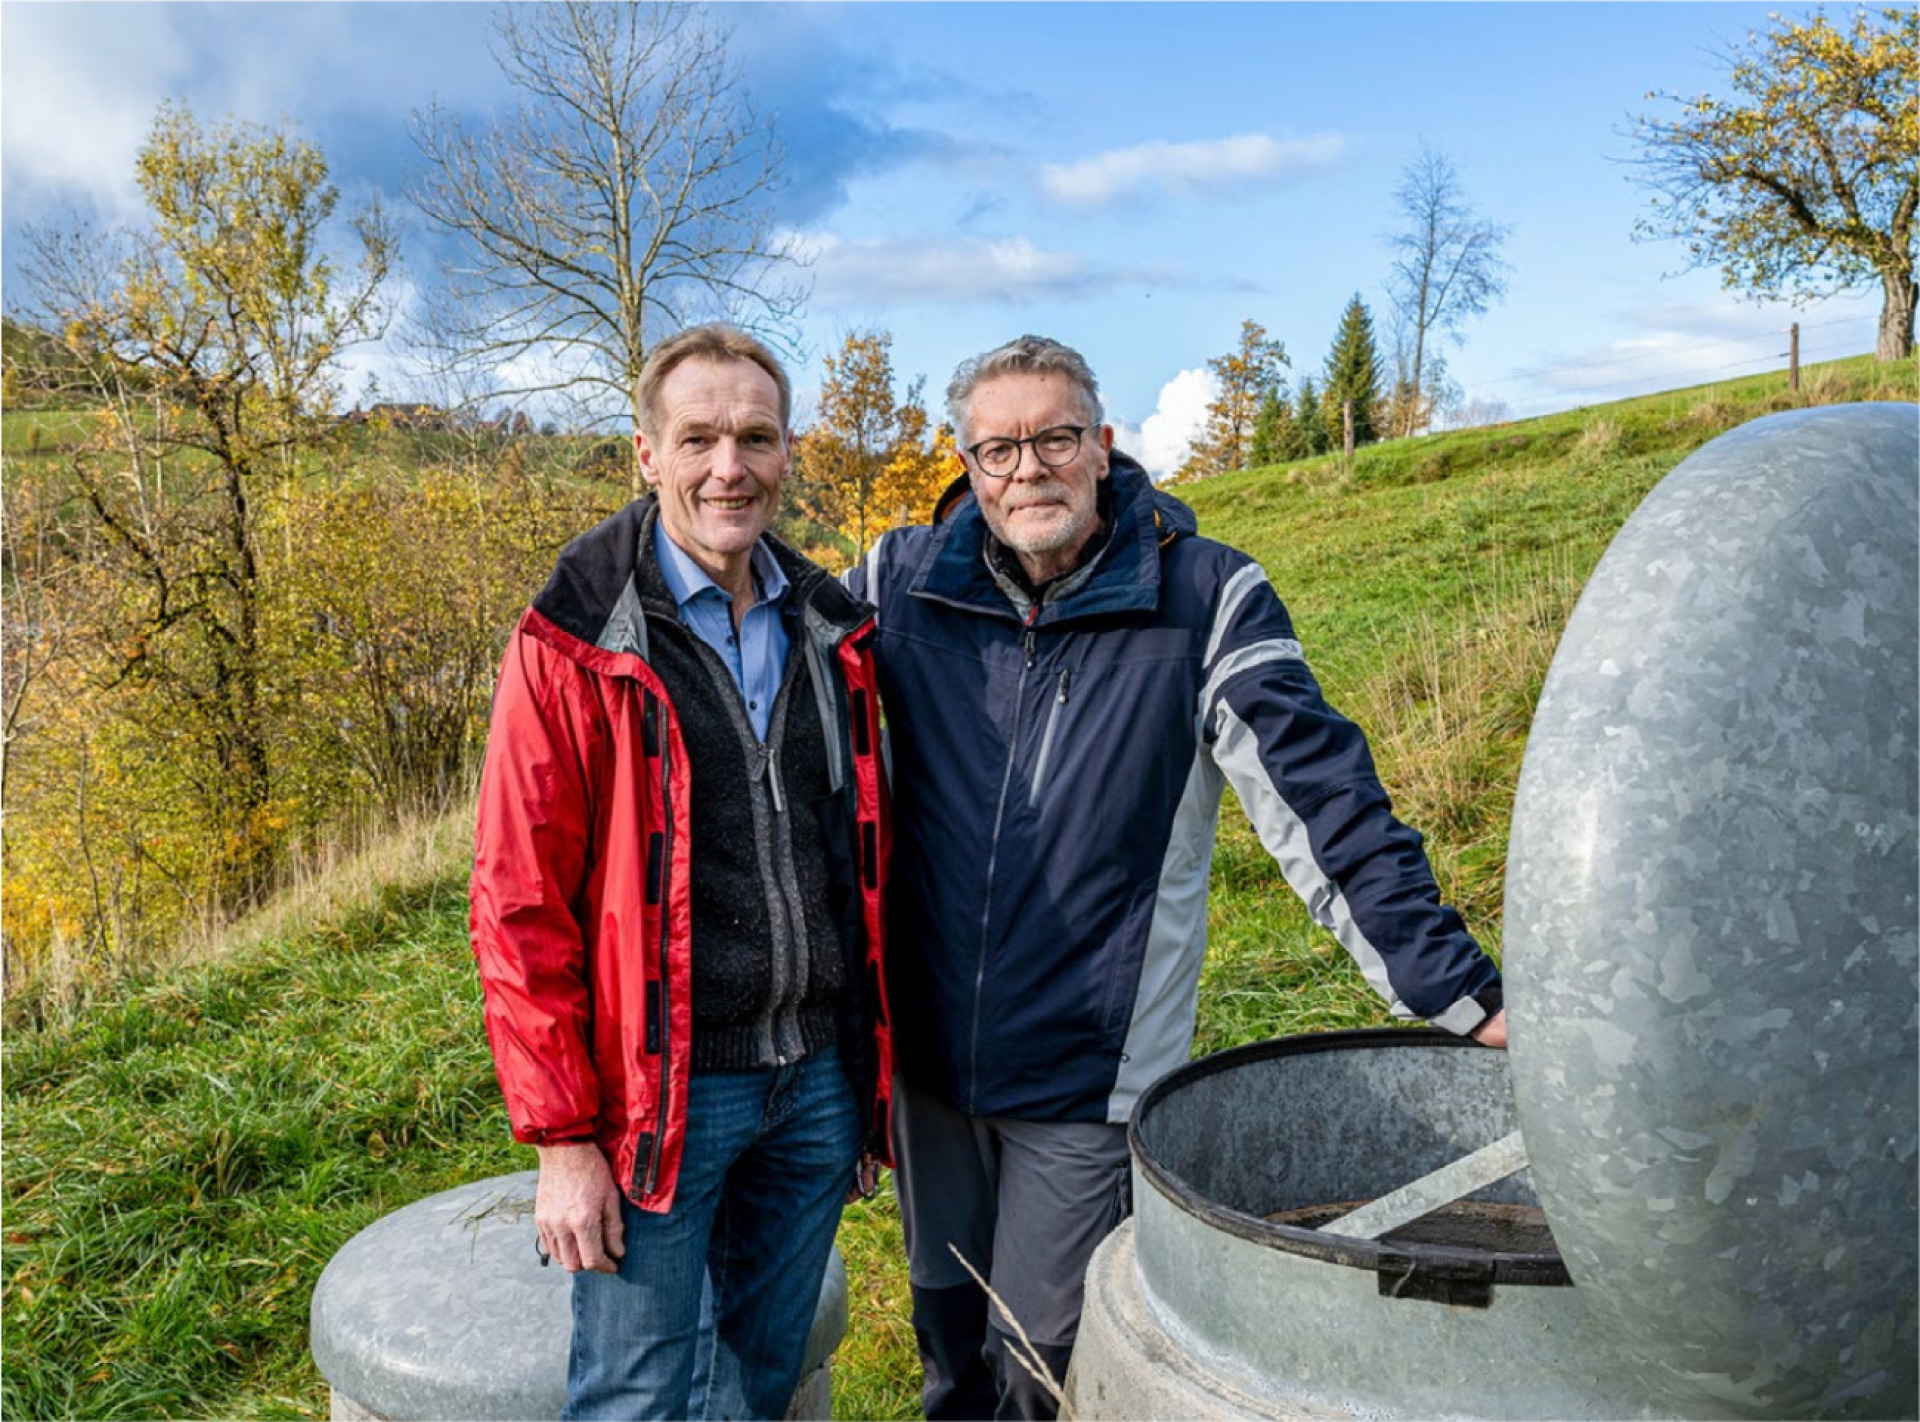 Landwirt Hans Peter-Suppliger (links) und Tüftler Roland Christen neben der Quellfassung, in der künftig der Kohlefilter das Trinkwasser reinigen wird. BILD: ZVG / LUKAS ZIEGLER, SCHWEIZER BERGHILFE